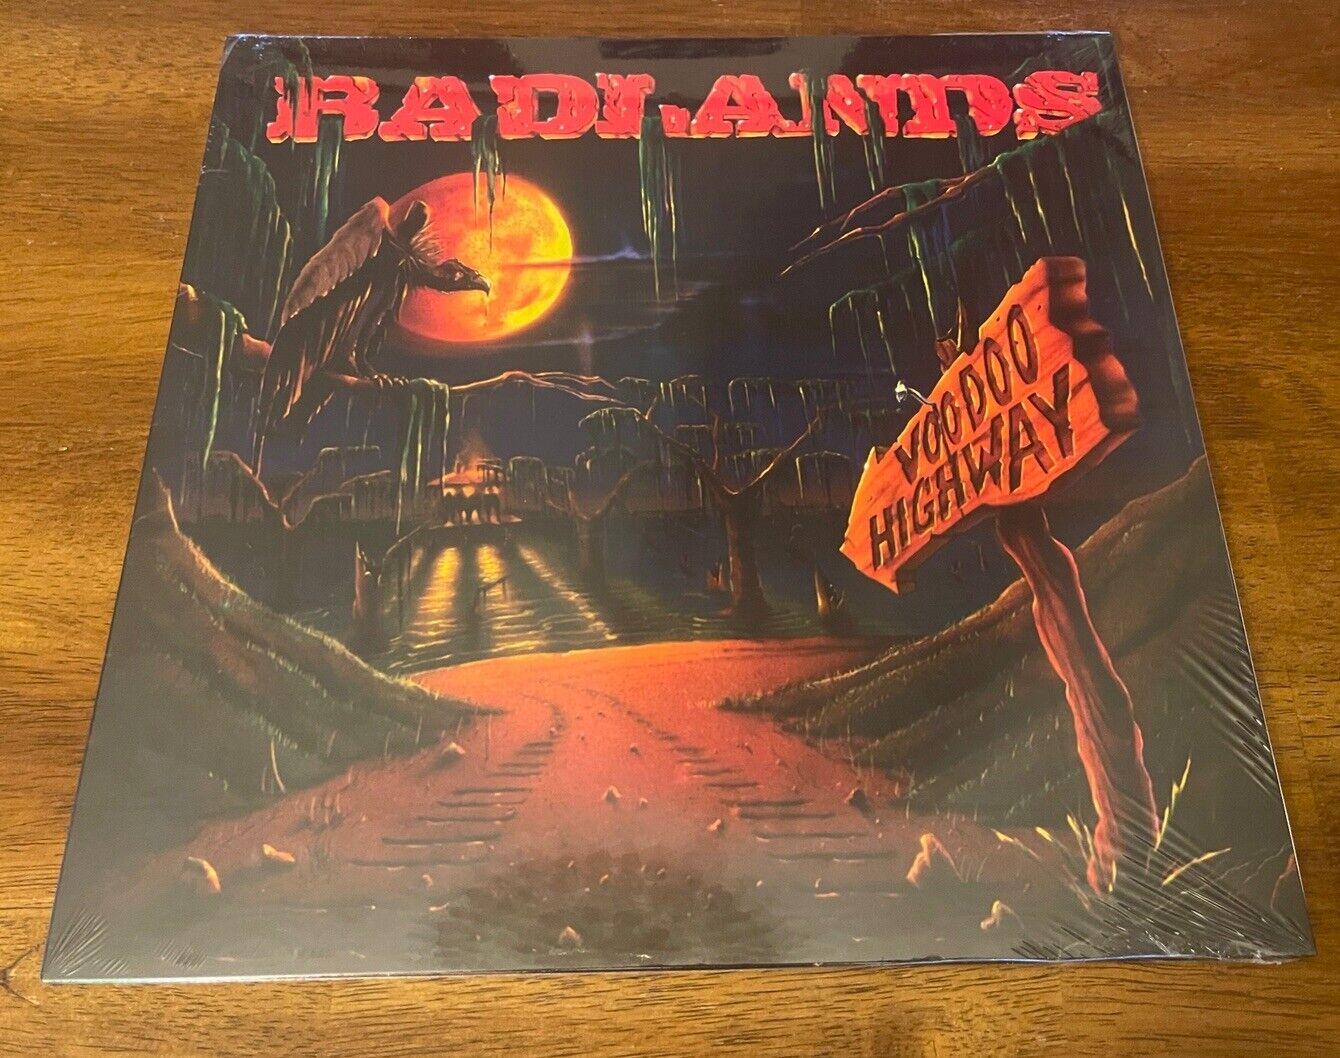 Badlands - Voodoo Highway, Colored Vinyl LP Import